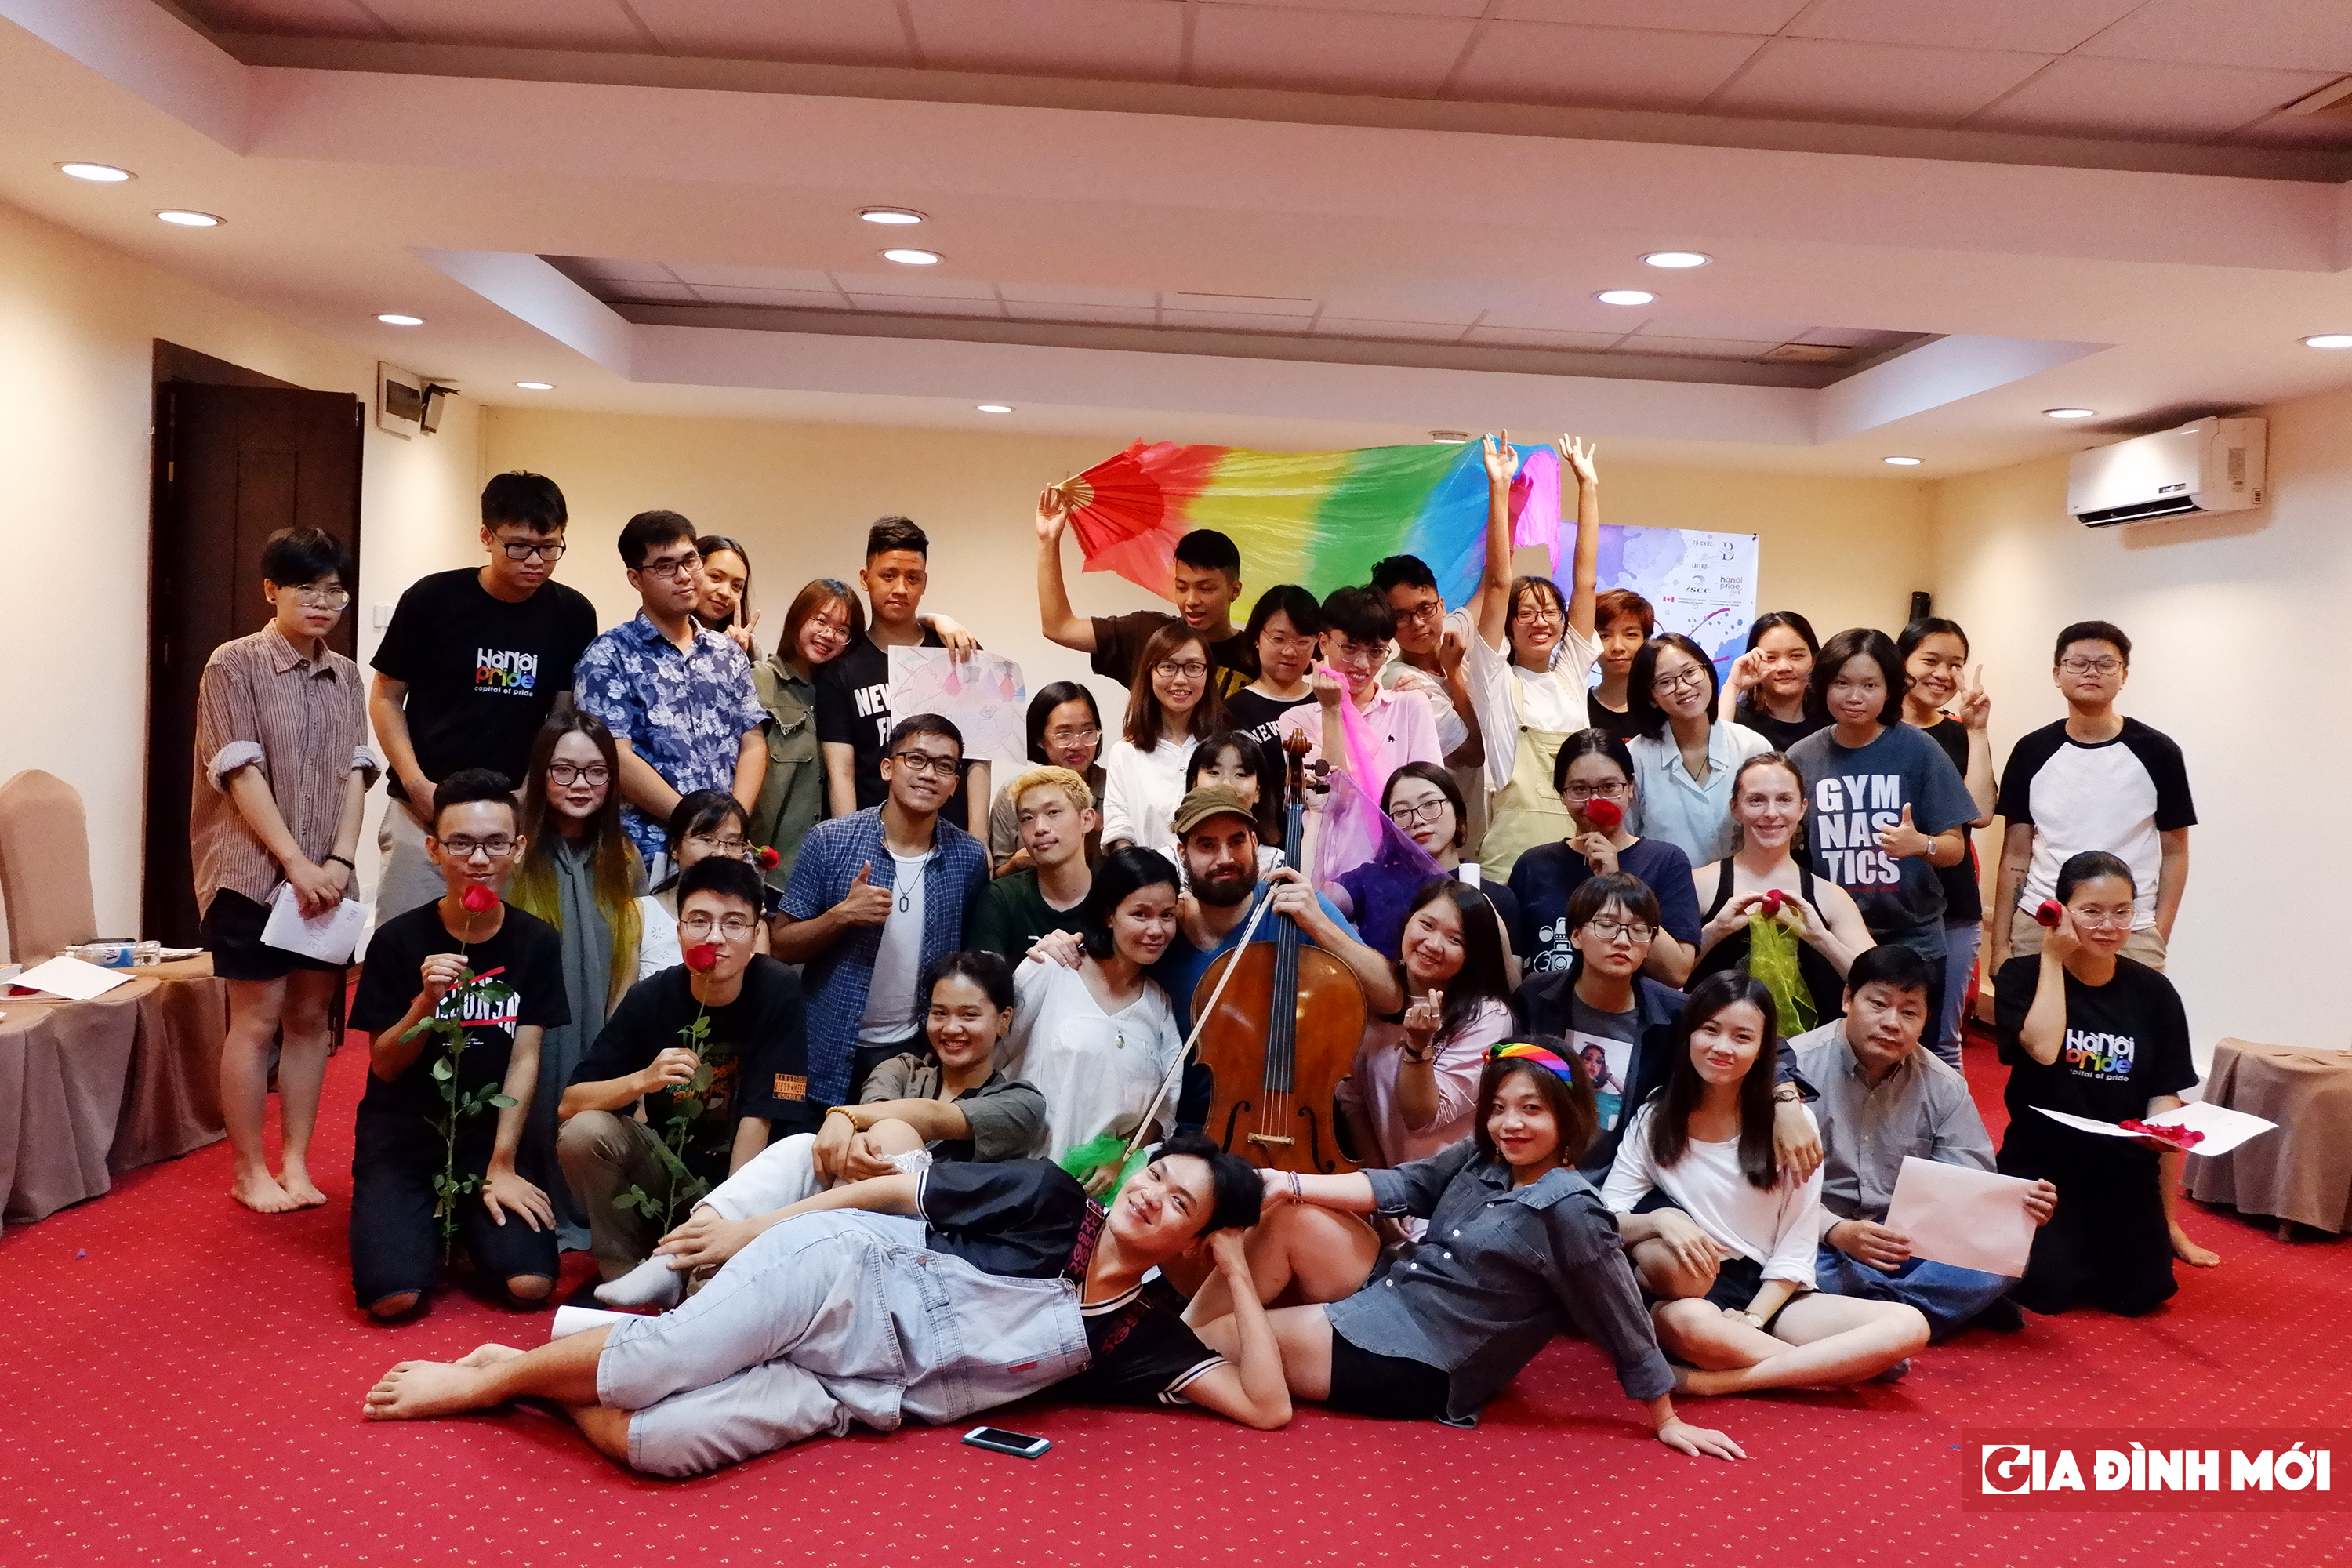 Hanoi Pride 2018: Workshop 'Lò Vẽ' - nơi bạn tự vẽ nên câu chuyện của riêng mình 8